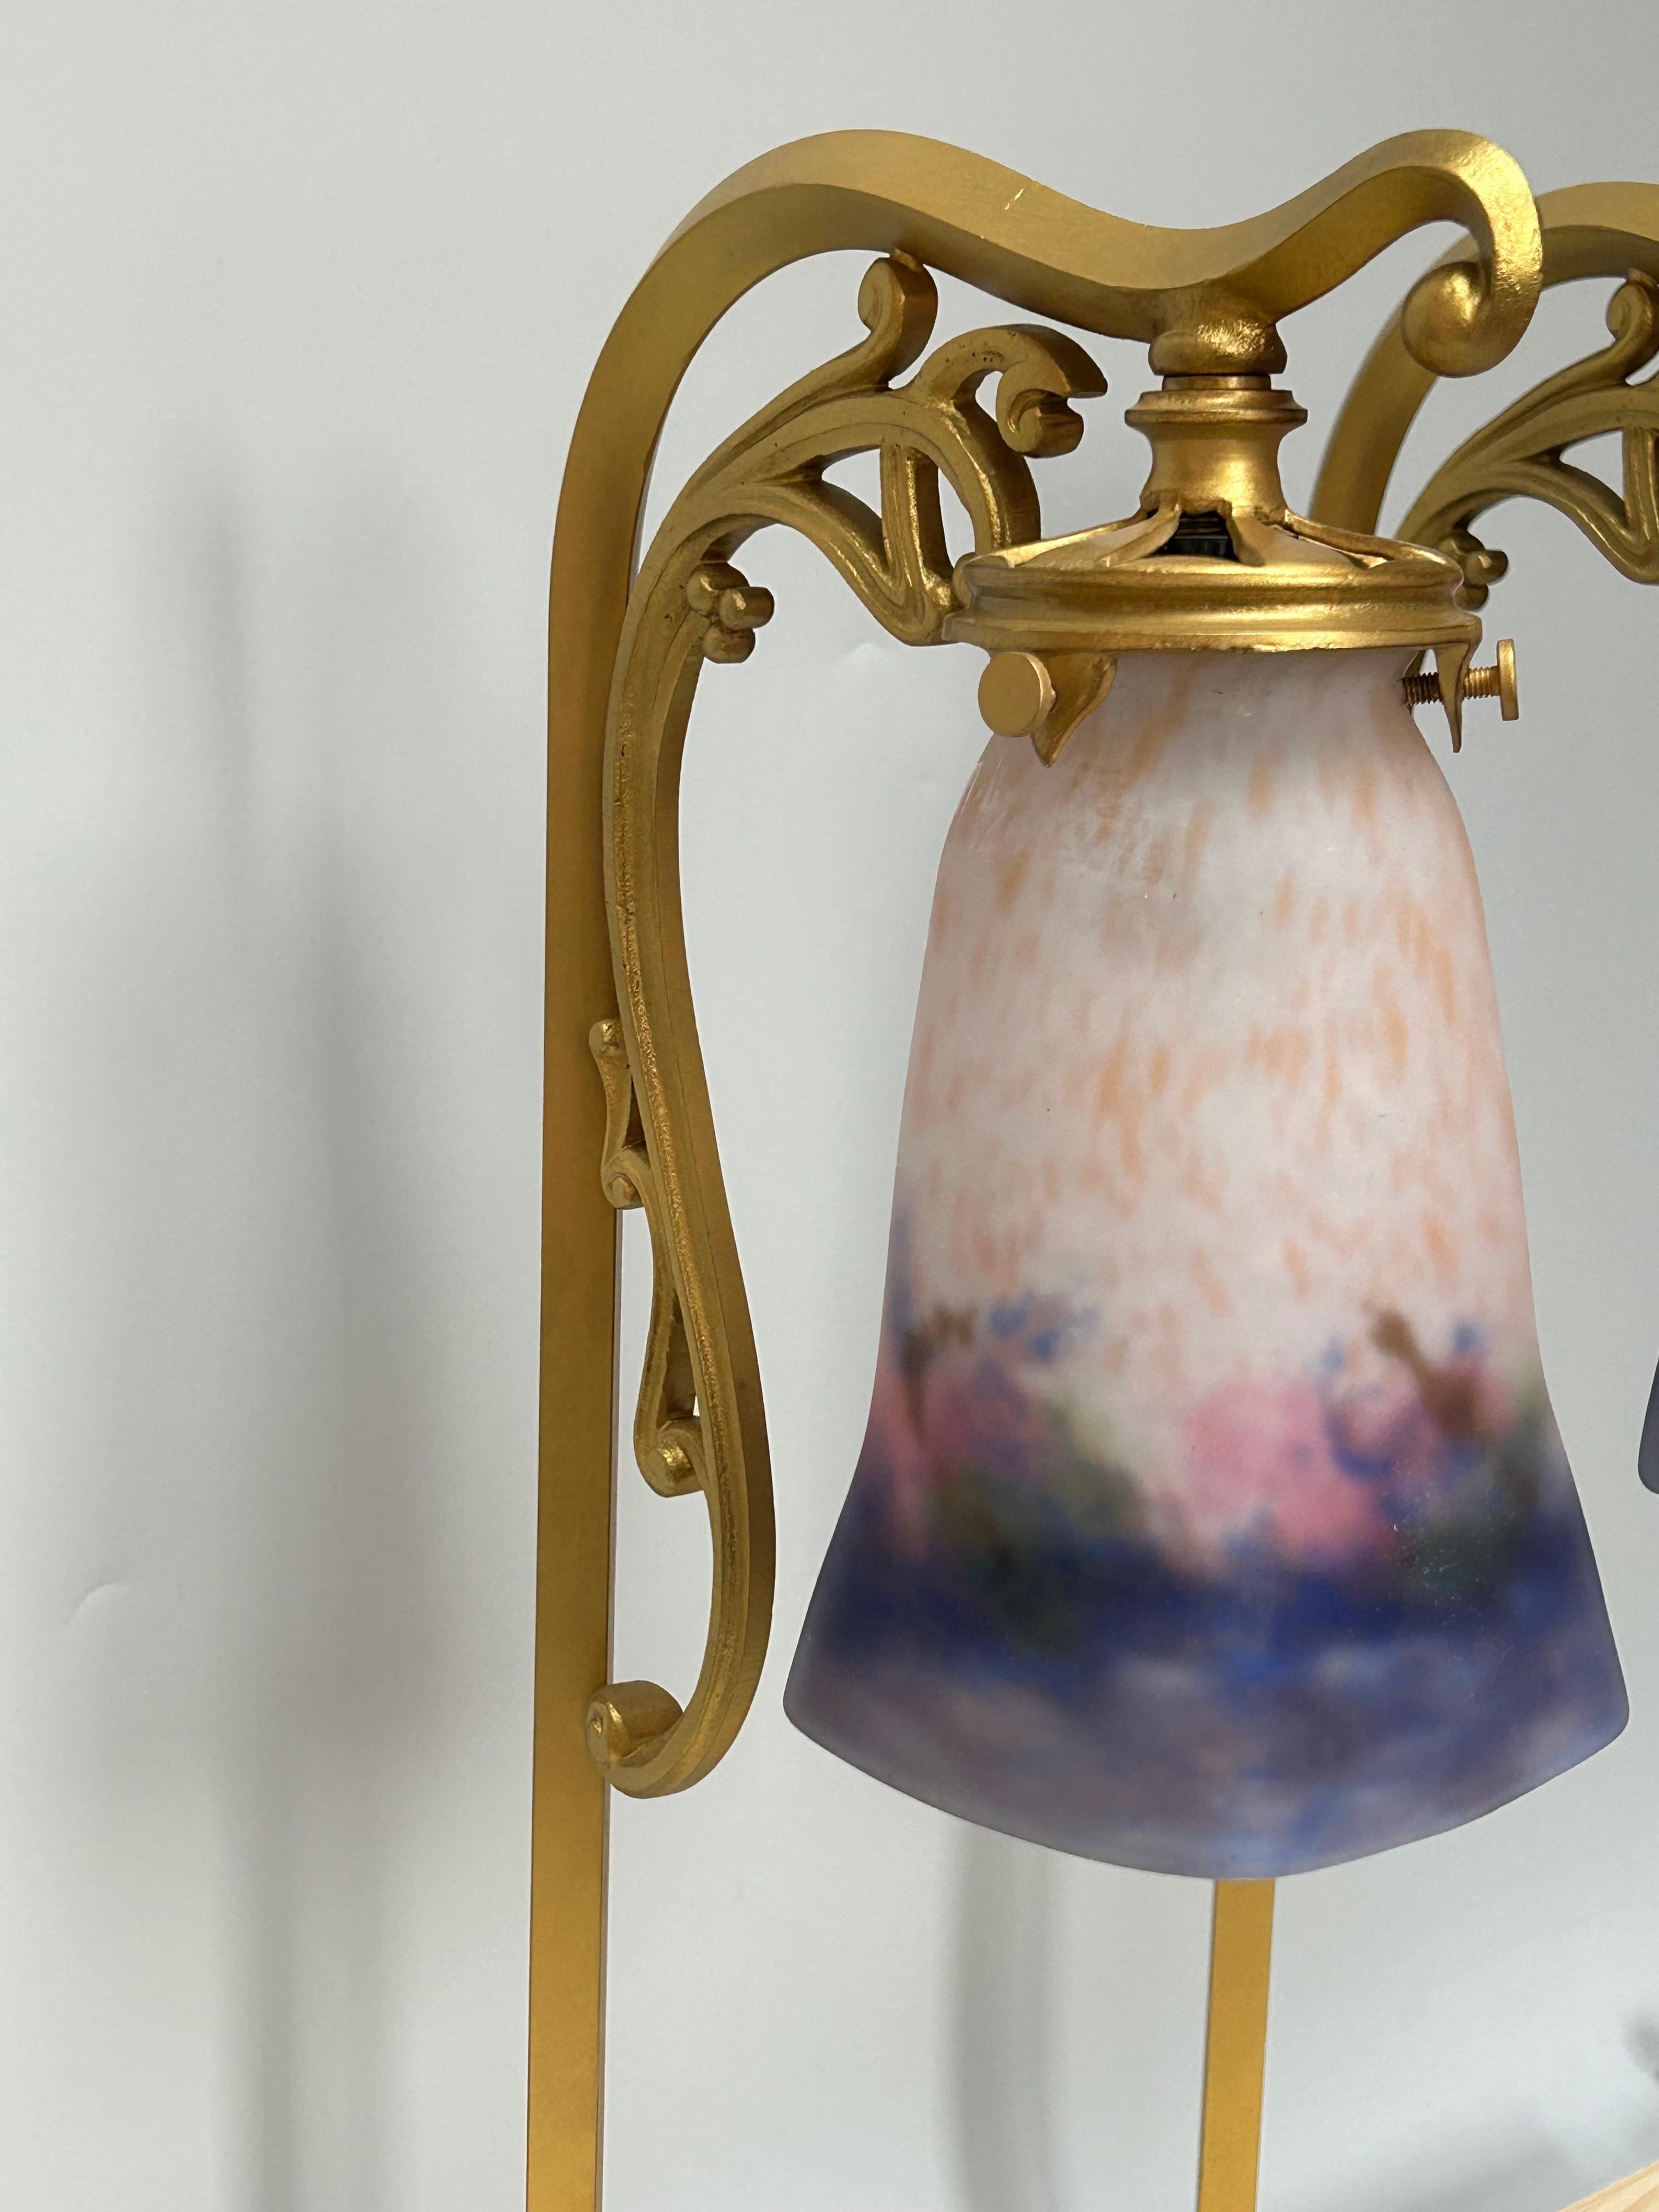 Lampenpaar um 1900 aus Bronze und vergoldetem Messing. Mehrfarbige Tulpen von Muller Frères.
Elektrifiziert in perfektem Zustand.
Diese Lampen stammen aus einer Pariser Brasserie vom Anfang des 20. Jahrhunderts.
